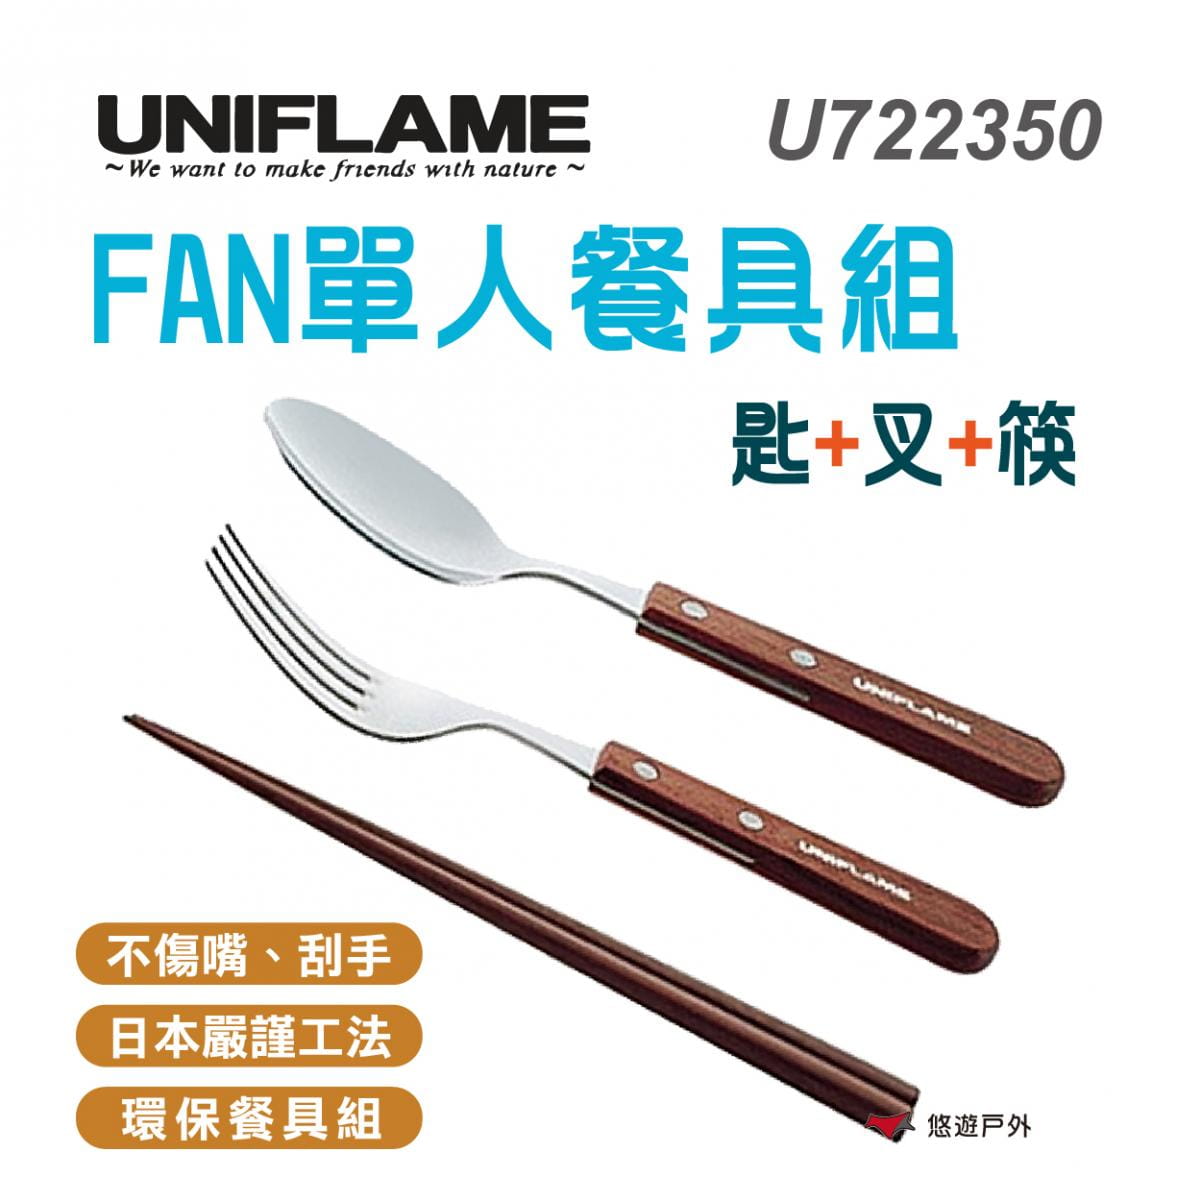 【UNIFLAME】U722350 日本 FAN單人餐具組 /匙+叉+筷 居家.露營.戶外.野炊 0